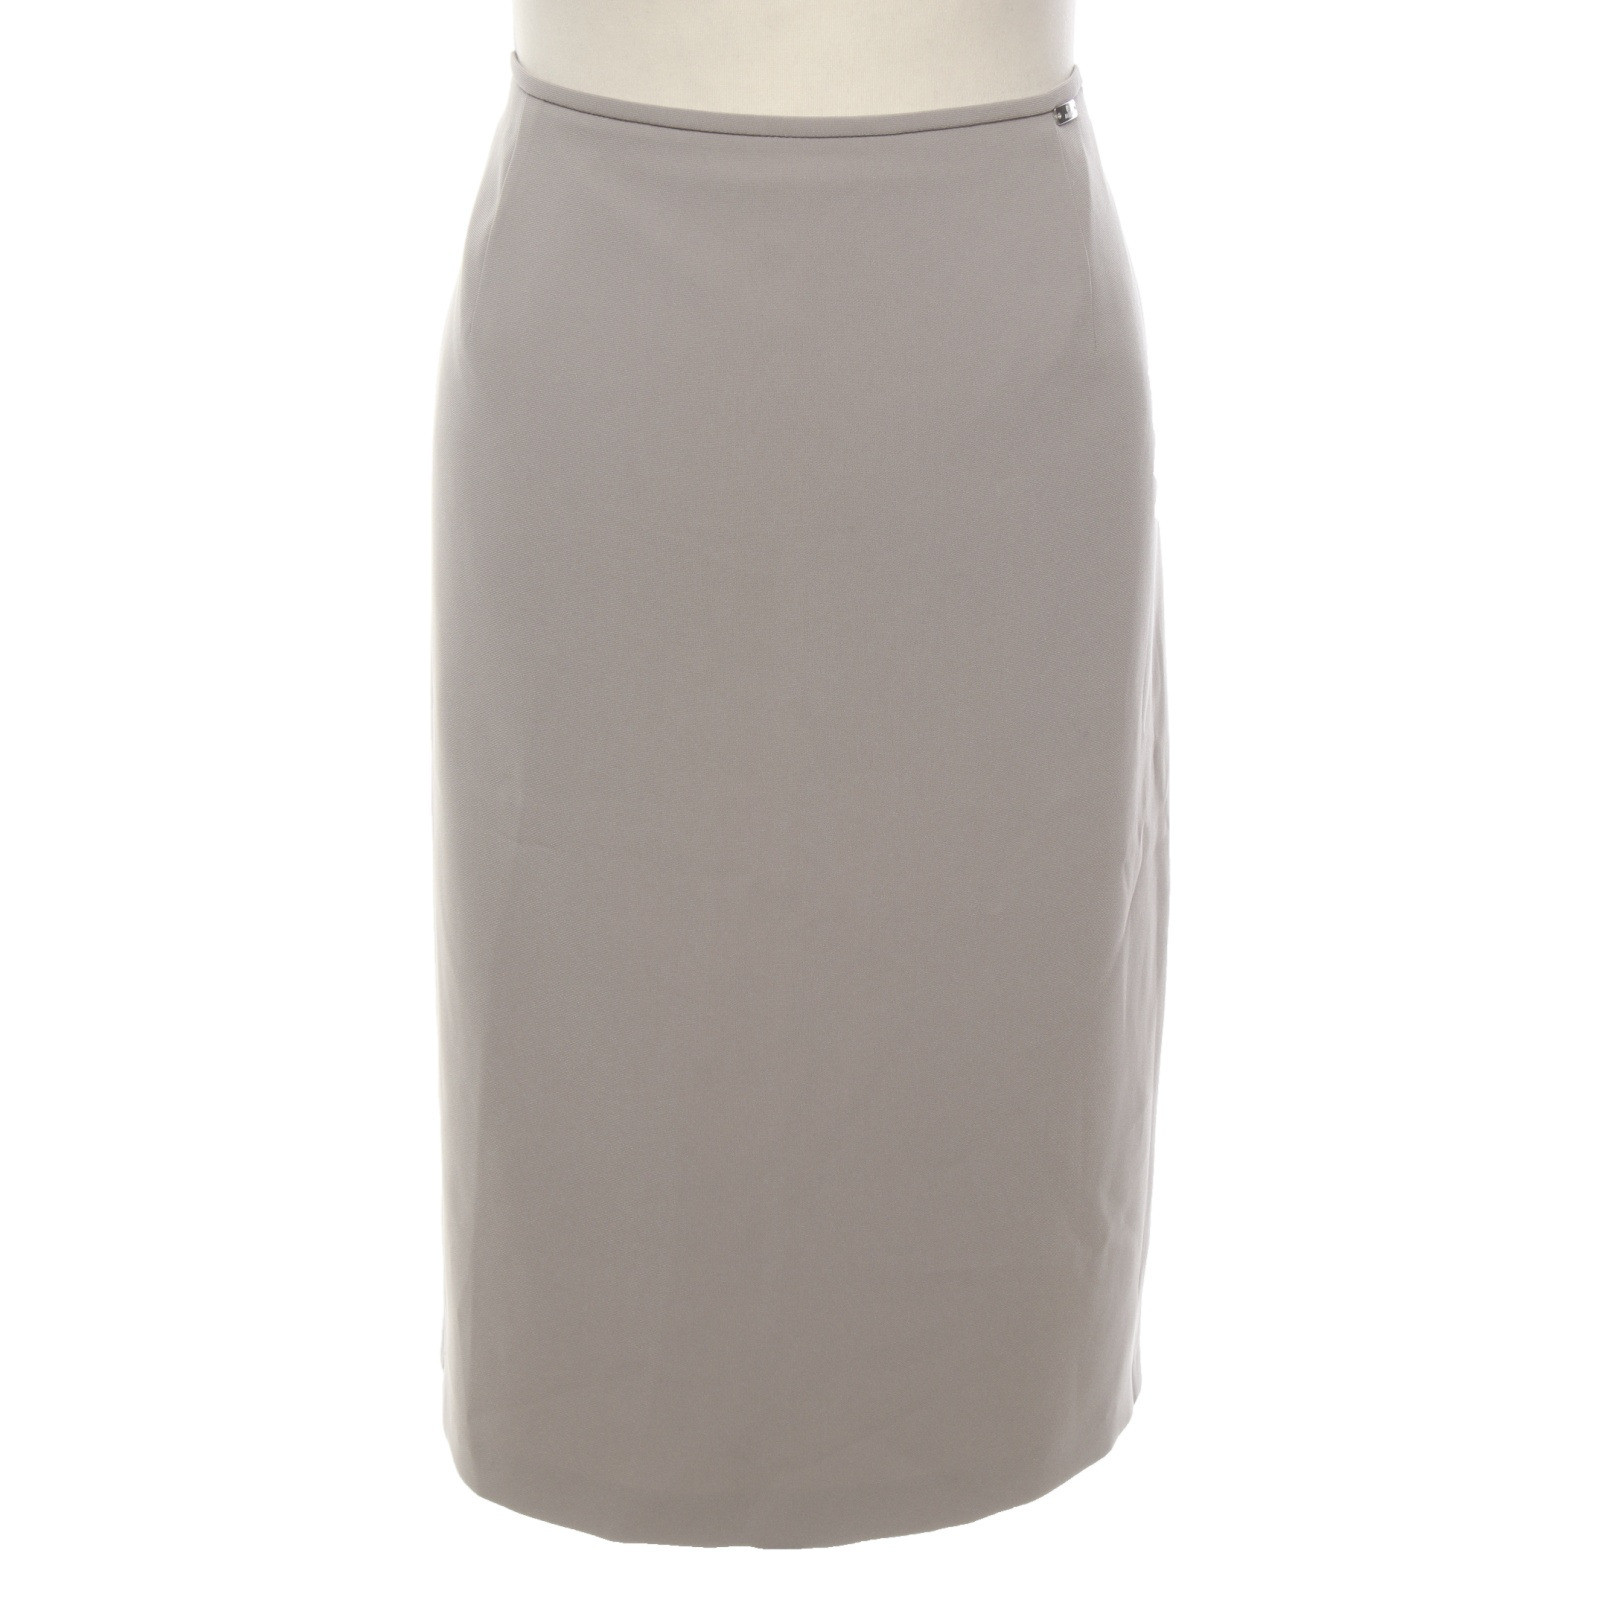 Basler Skirt in Grey - Second Hand Basler Skirt in Grey buy used for 59€  (7253997)